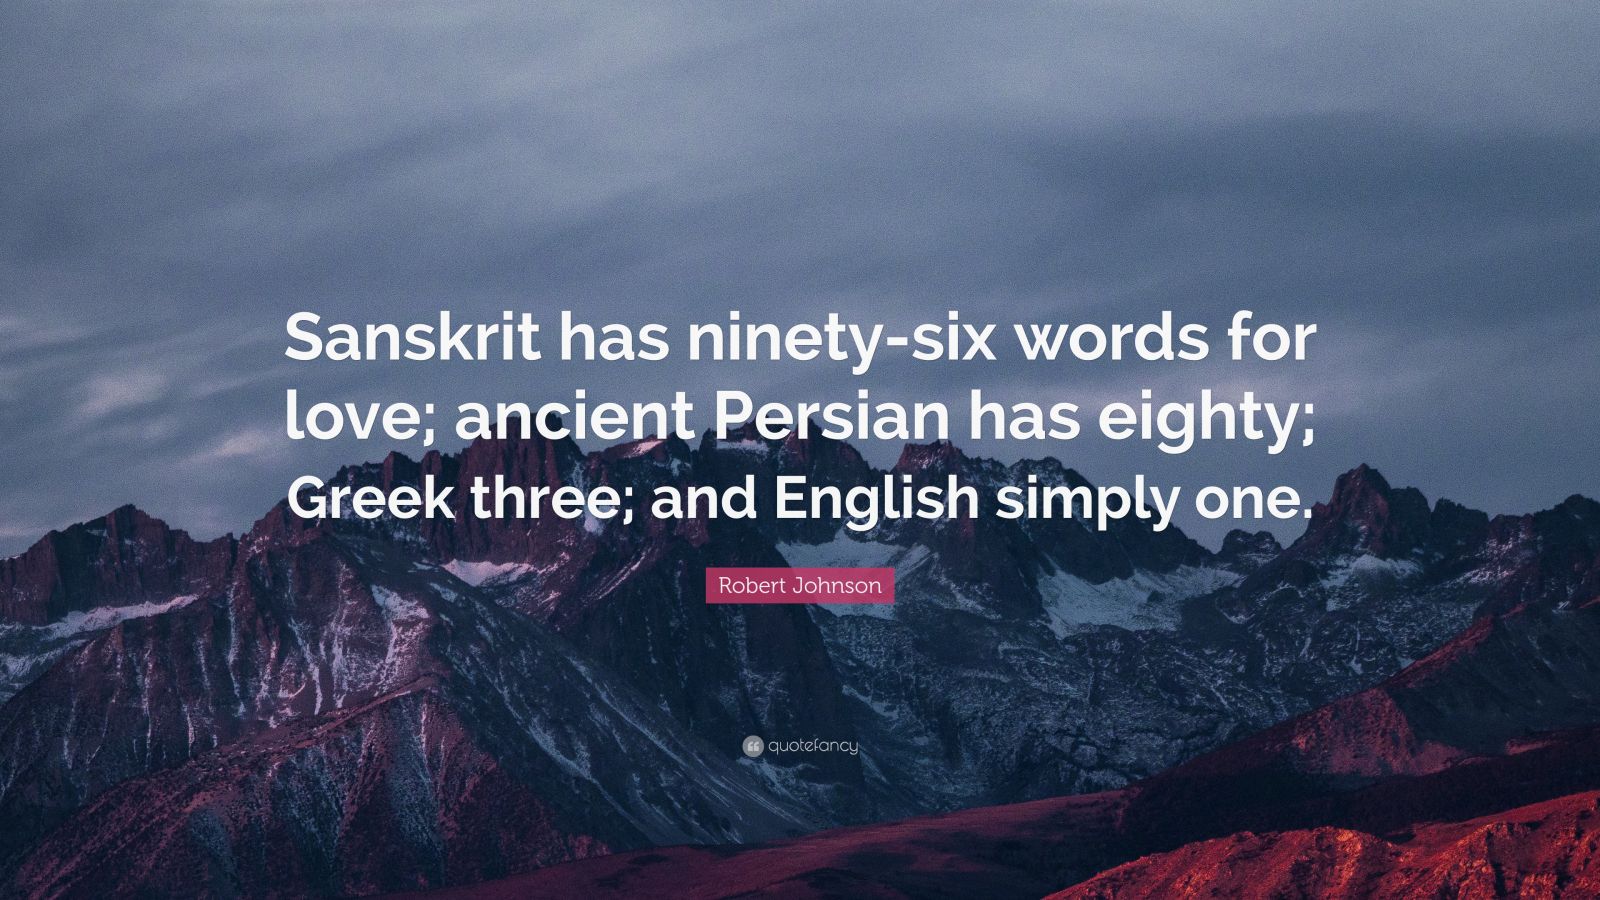 Robert Johnson Quote: "Sanskrit has ninety-six words for ...